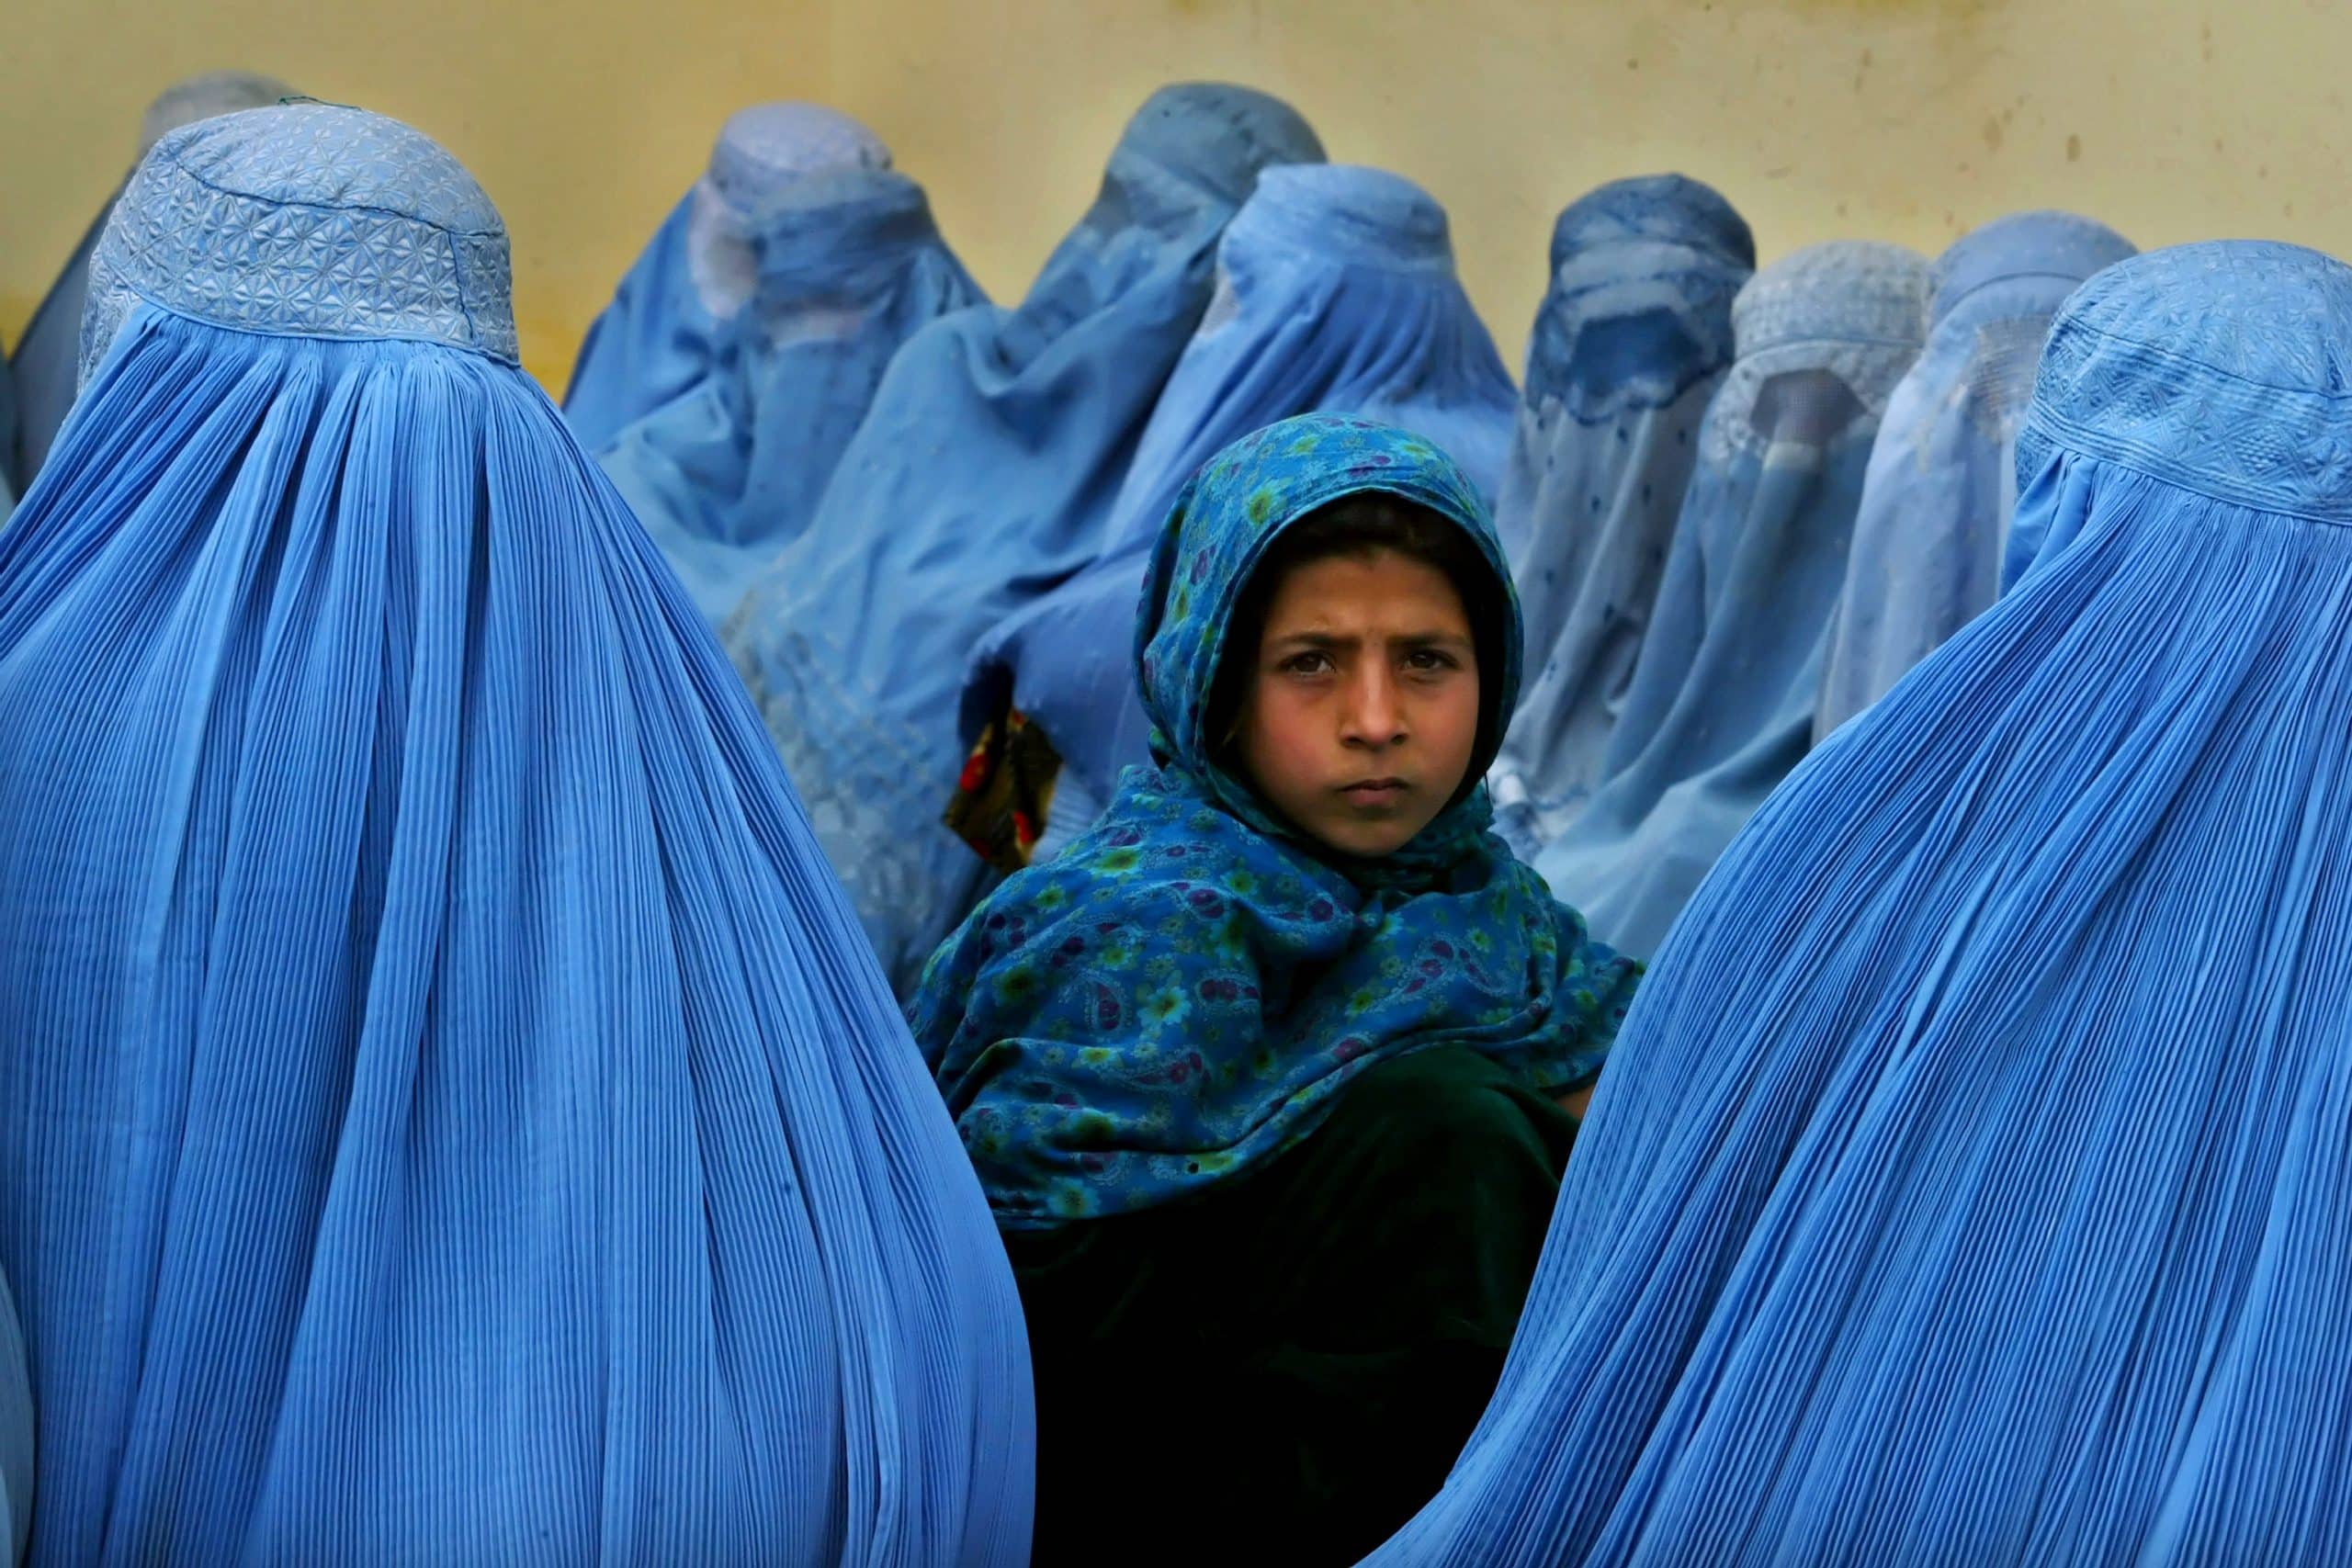 Paula Bronstein : Les avantages d'être une femme photojournaliste en Afghanistan